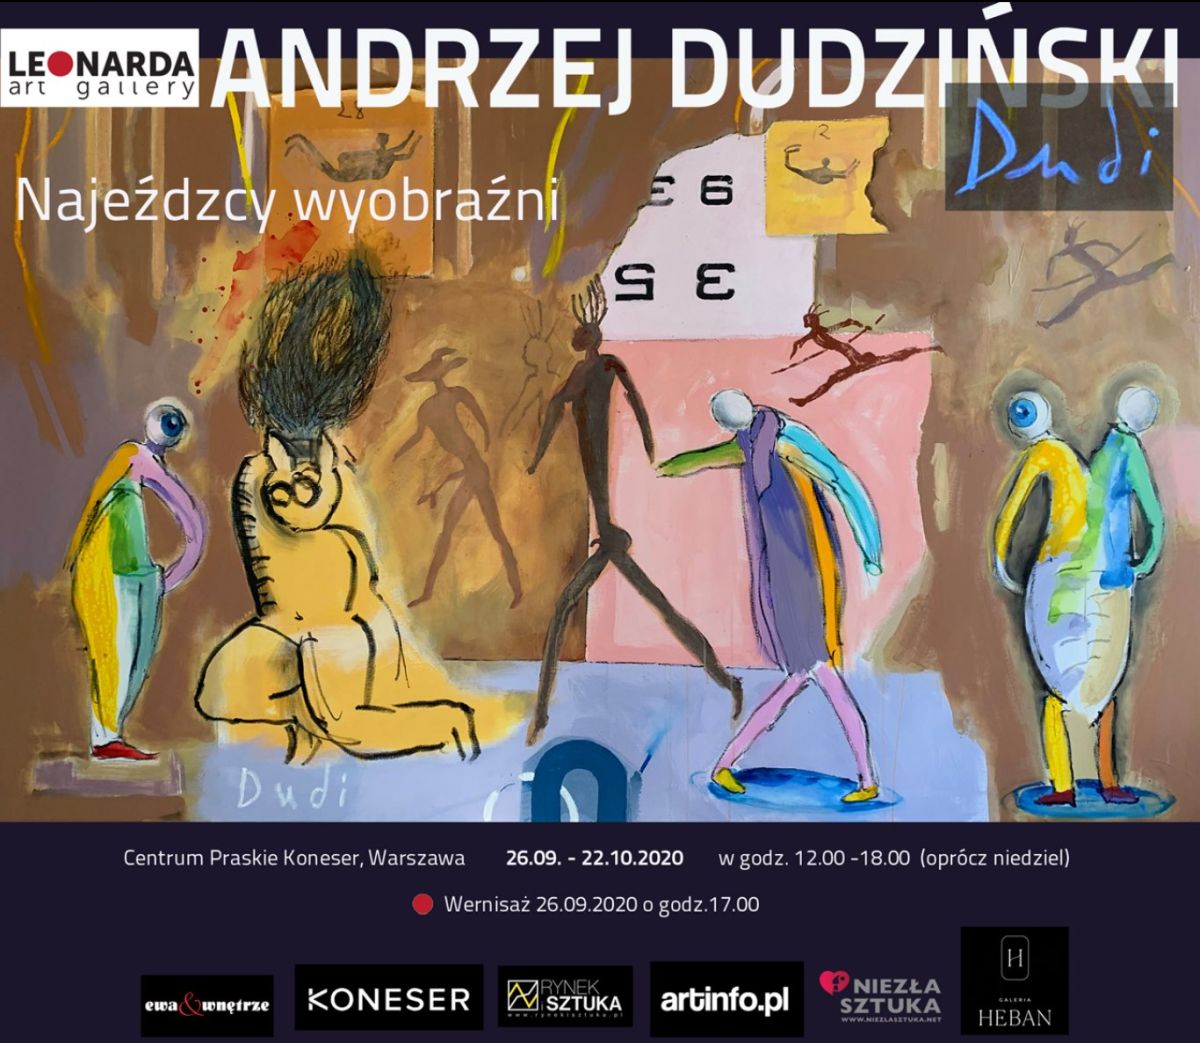 leonarda-gallery-wystawa-dudzinski